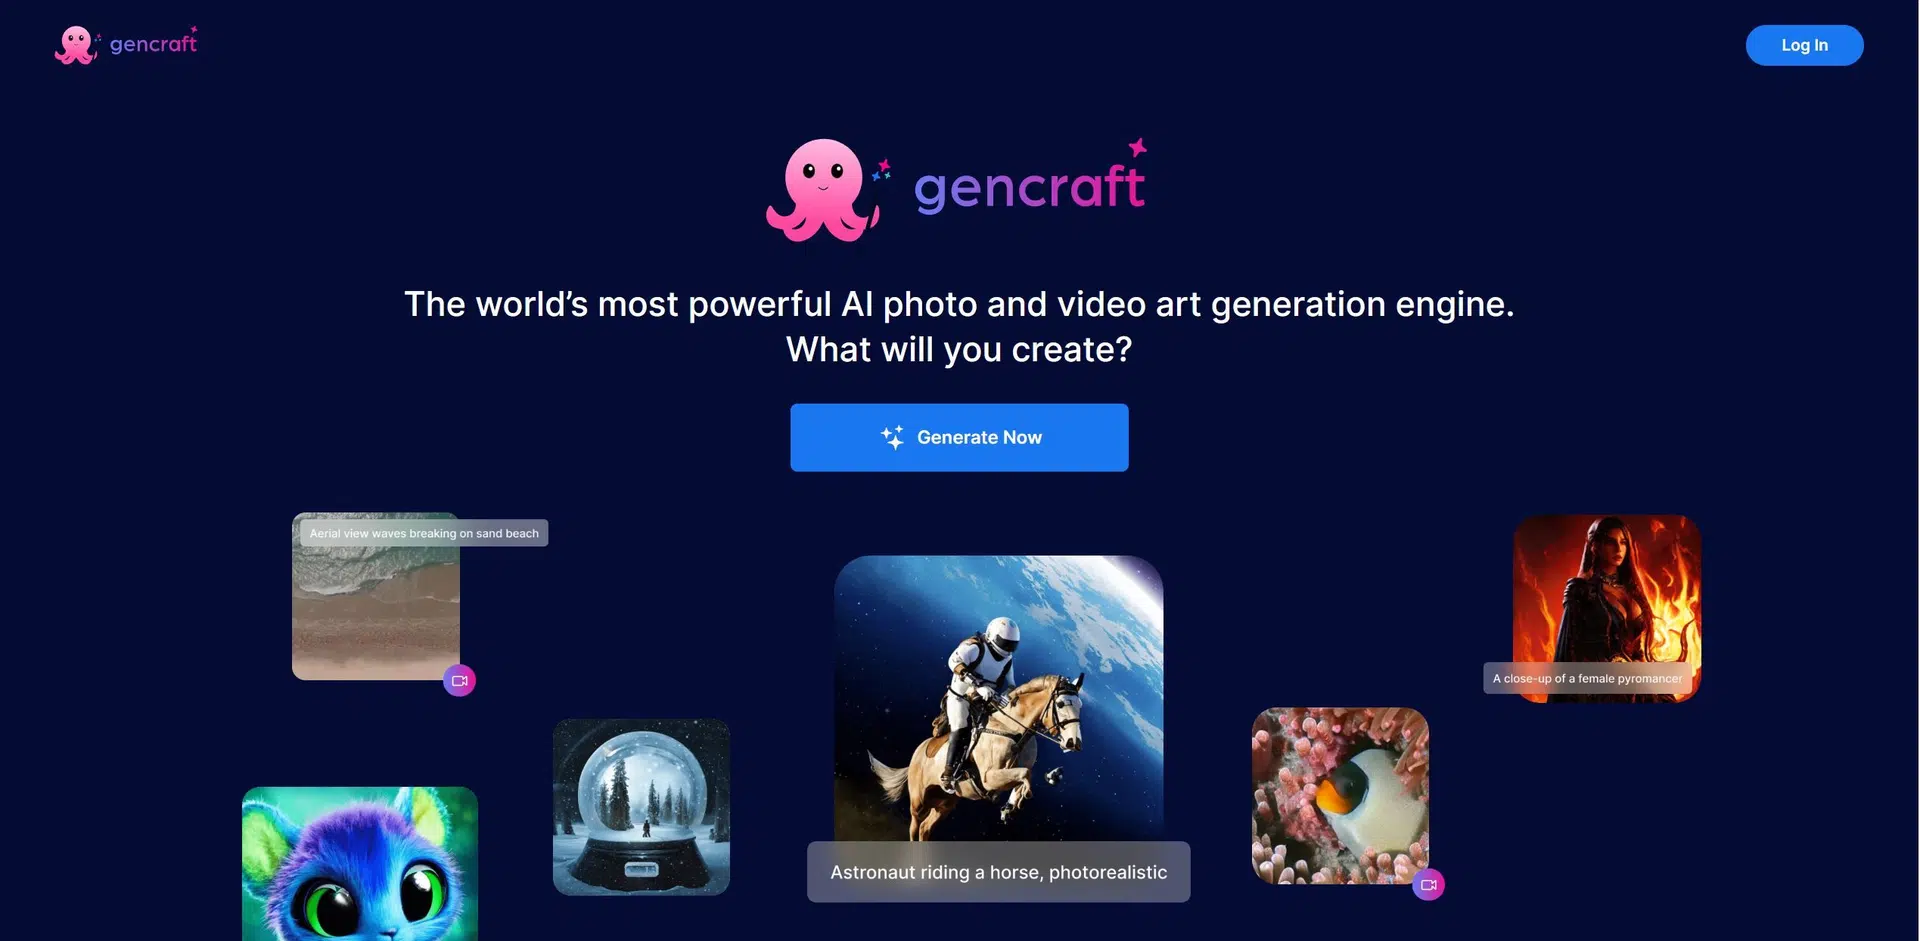 Gencraftwebsite picture